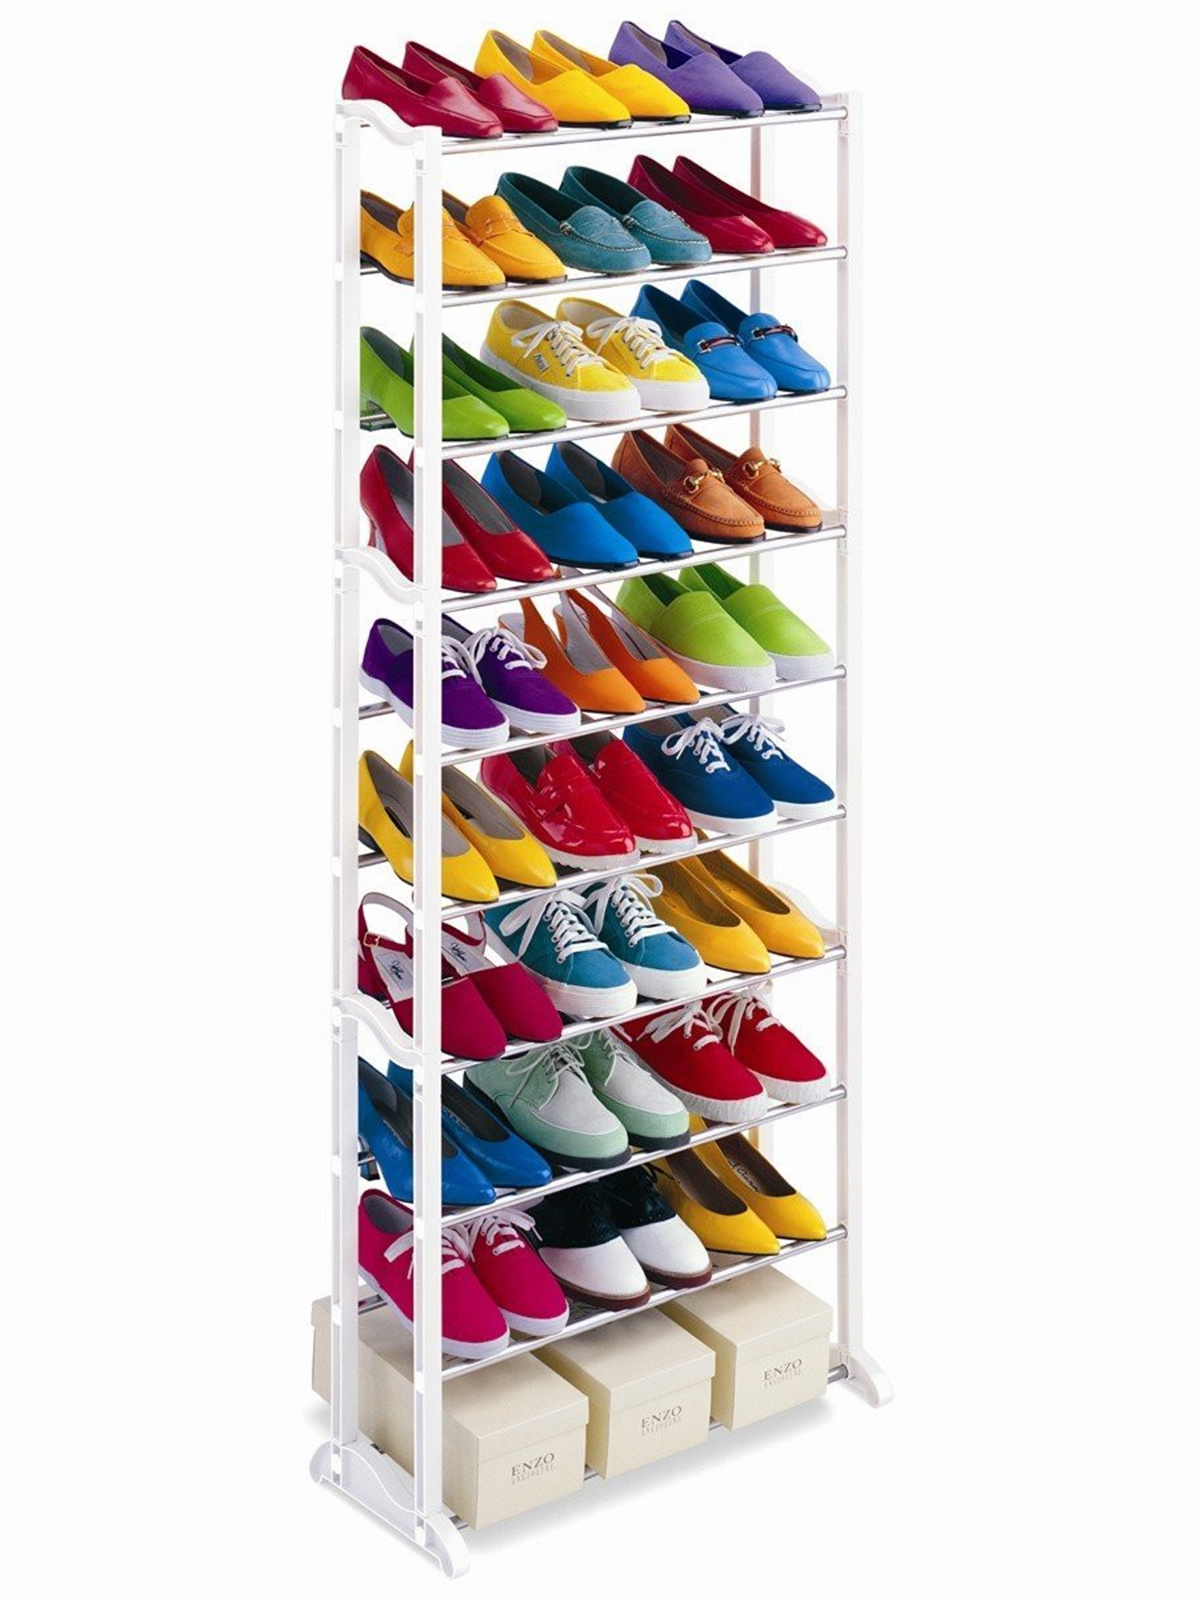 пластиковые полки для обуви в шкаф